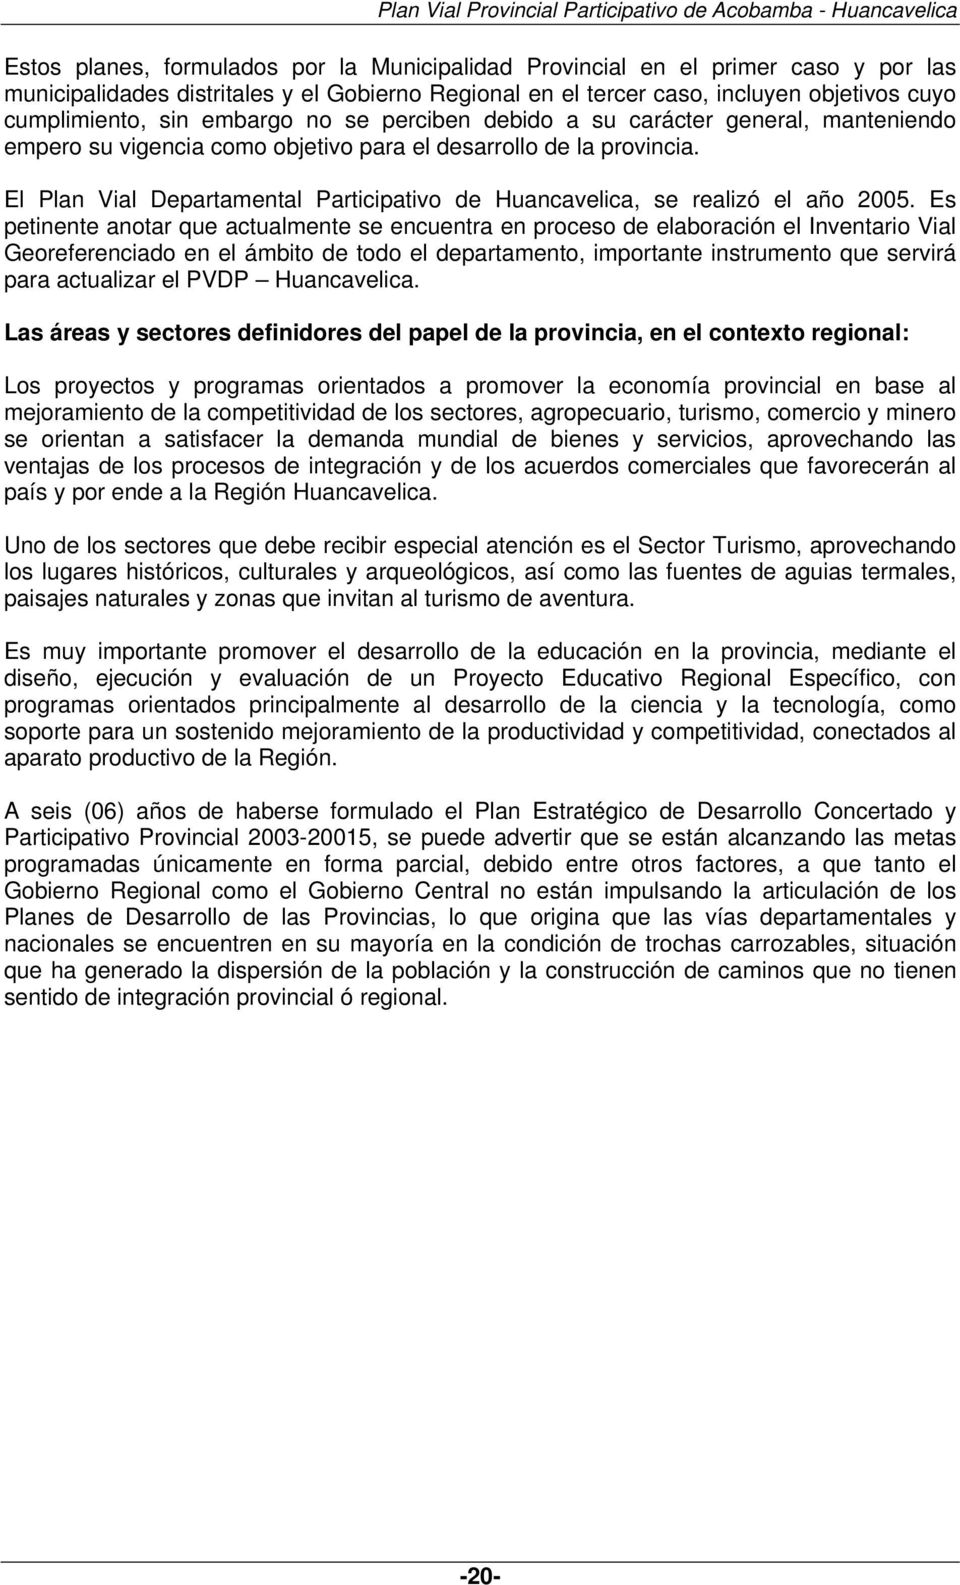 El Plan Vial Departamental Participativo de Huancavelica, se realizó el año 2005.